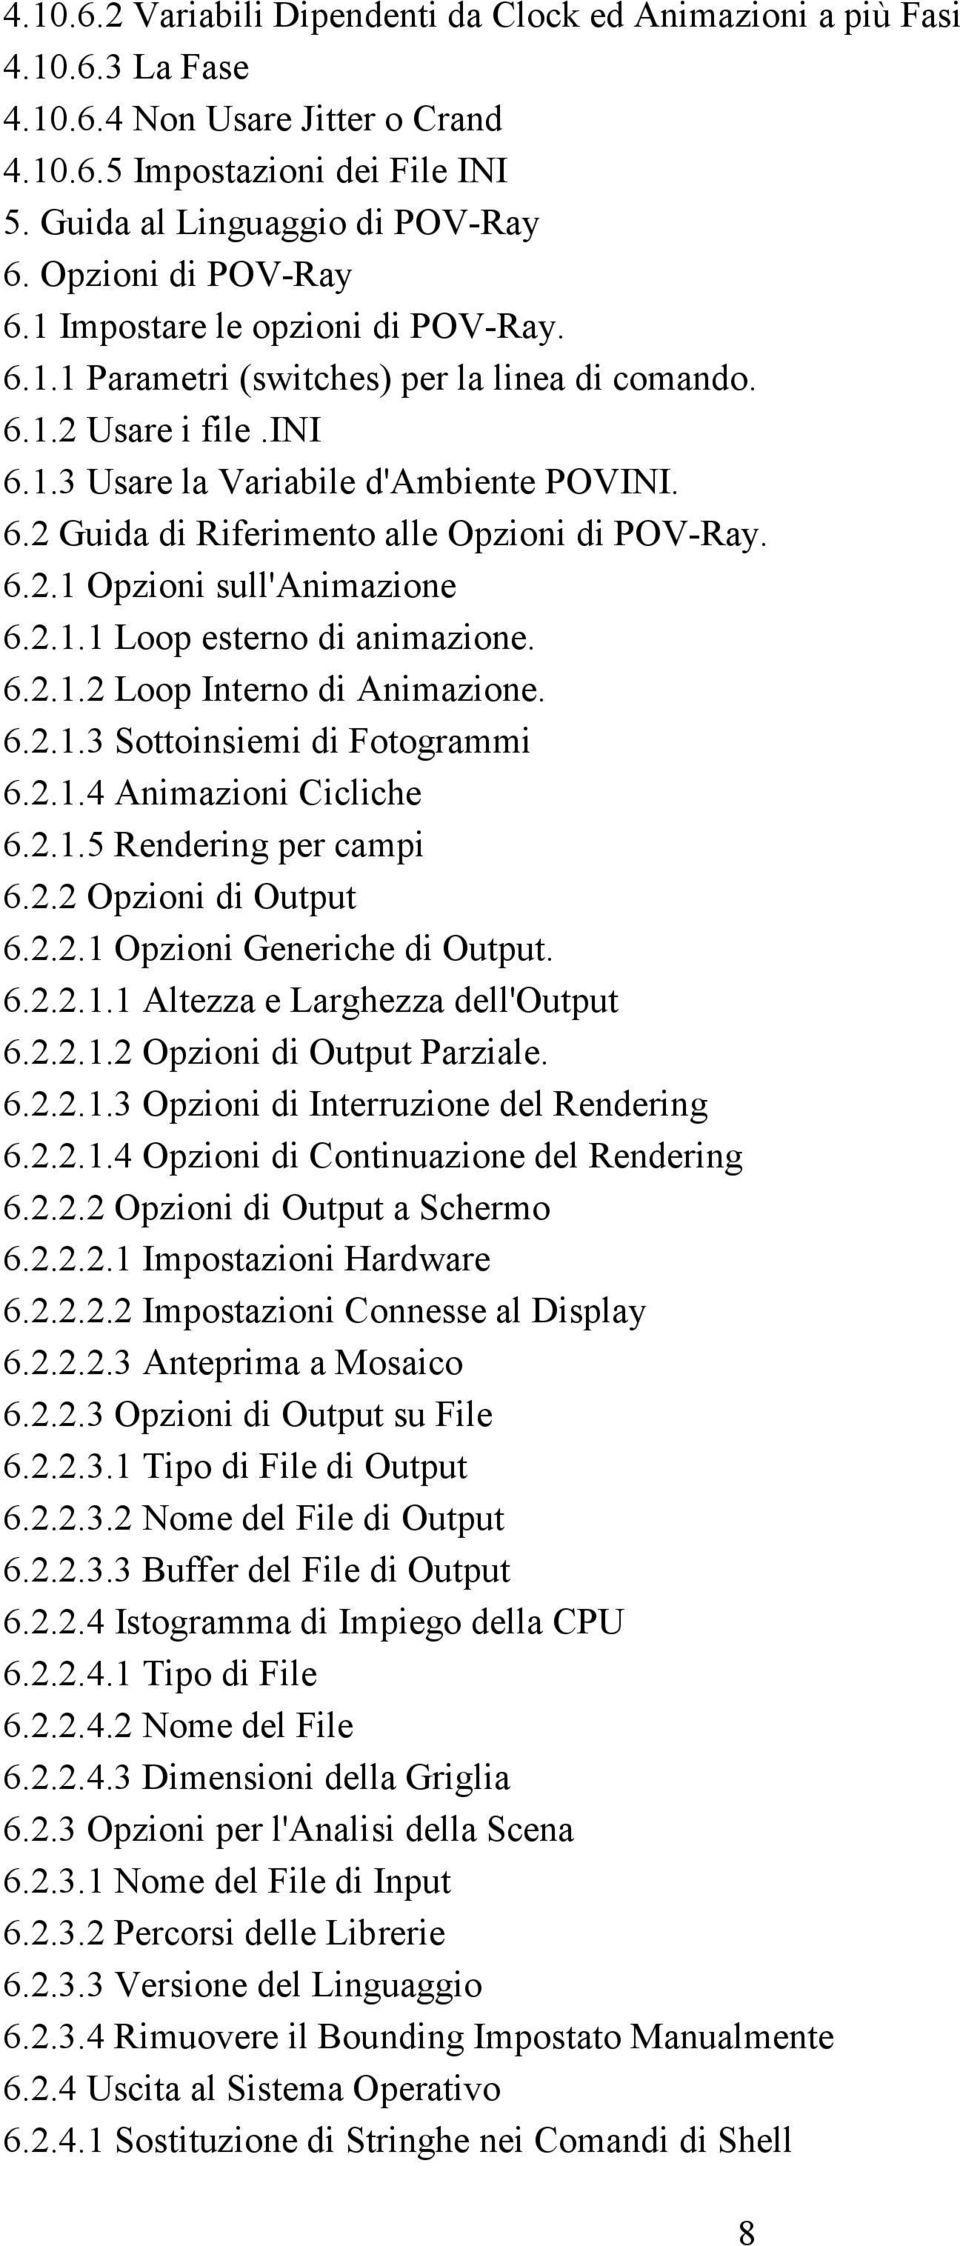 6.2.1 Opzioni sull'animazione 6.2.1.1 Loop esterno di animazione. 6.2.1.2 Loop Interno di Animazione. 6.2.1.3 Sottoinsiemi di Fotogrammi 6.2.1.4 Animazioni Cicliche 6.2.1.5 Rendering per campi 6.2.2 Opzioni di Output 6.